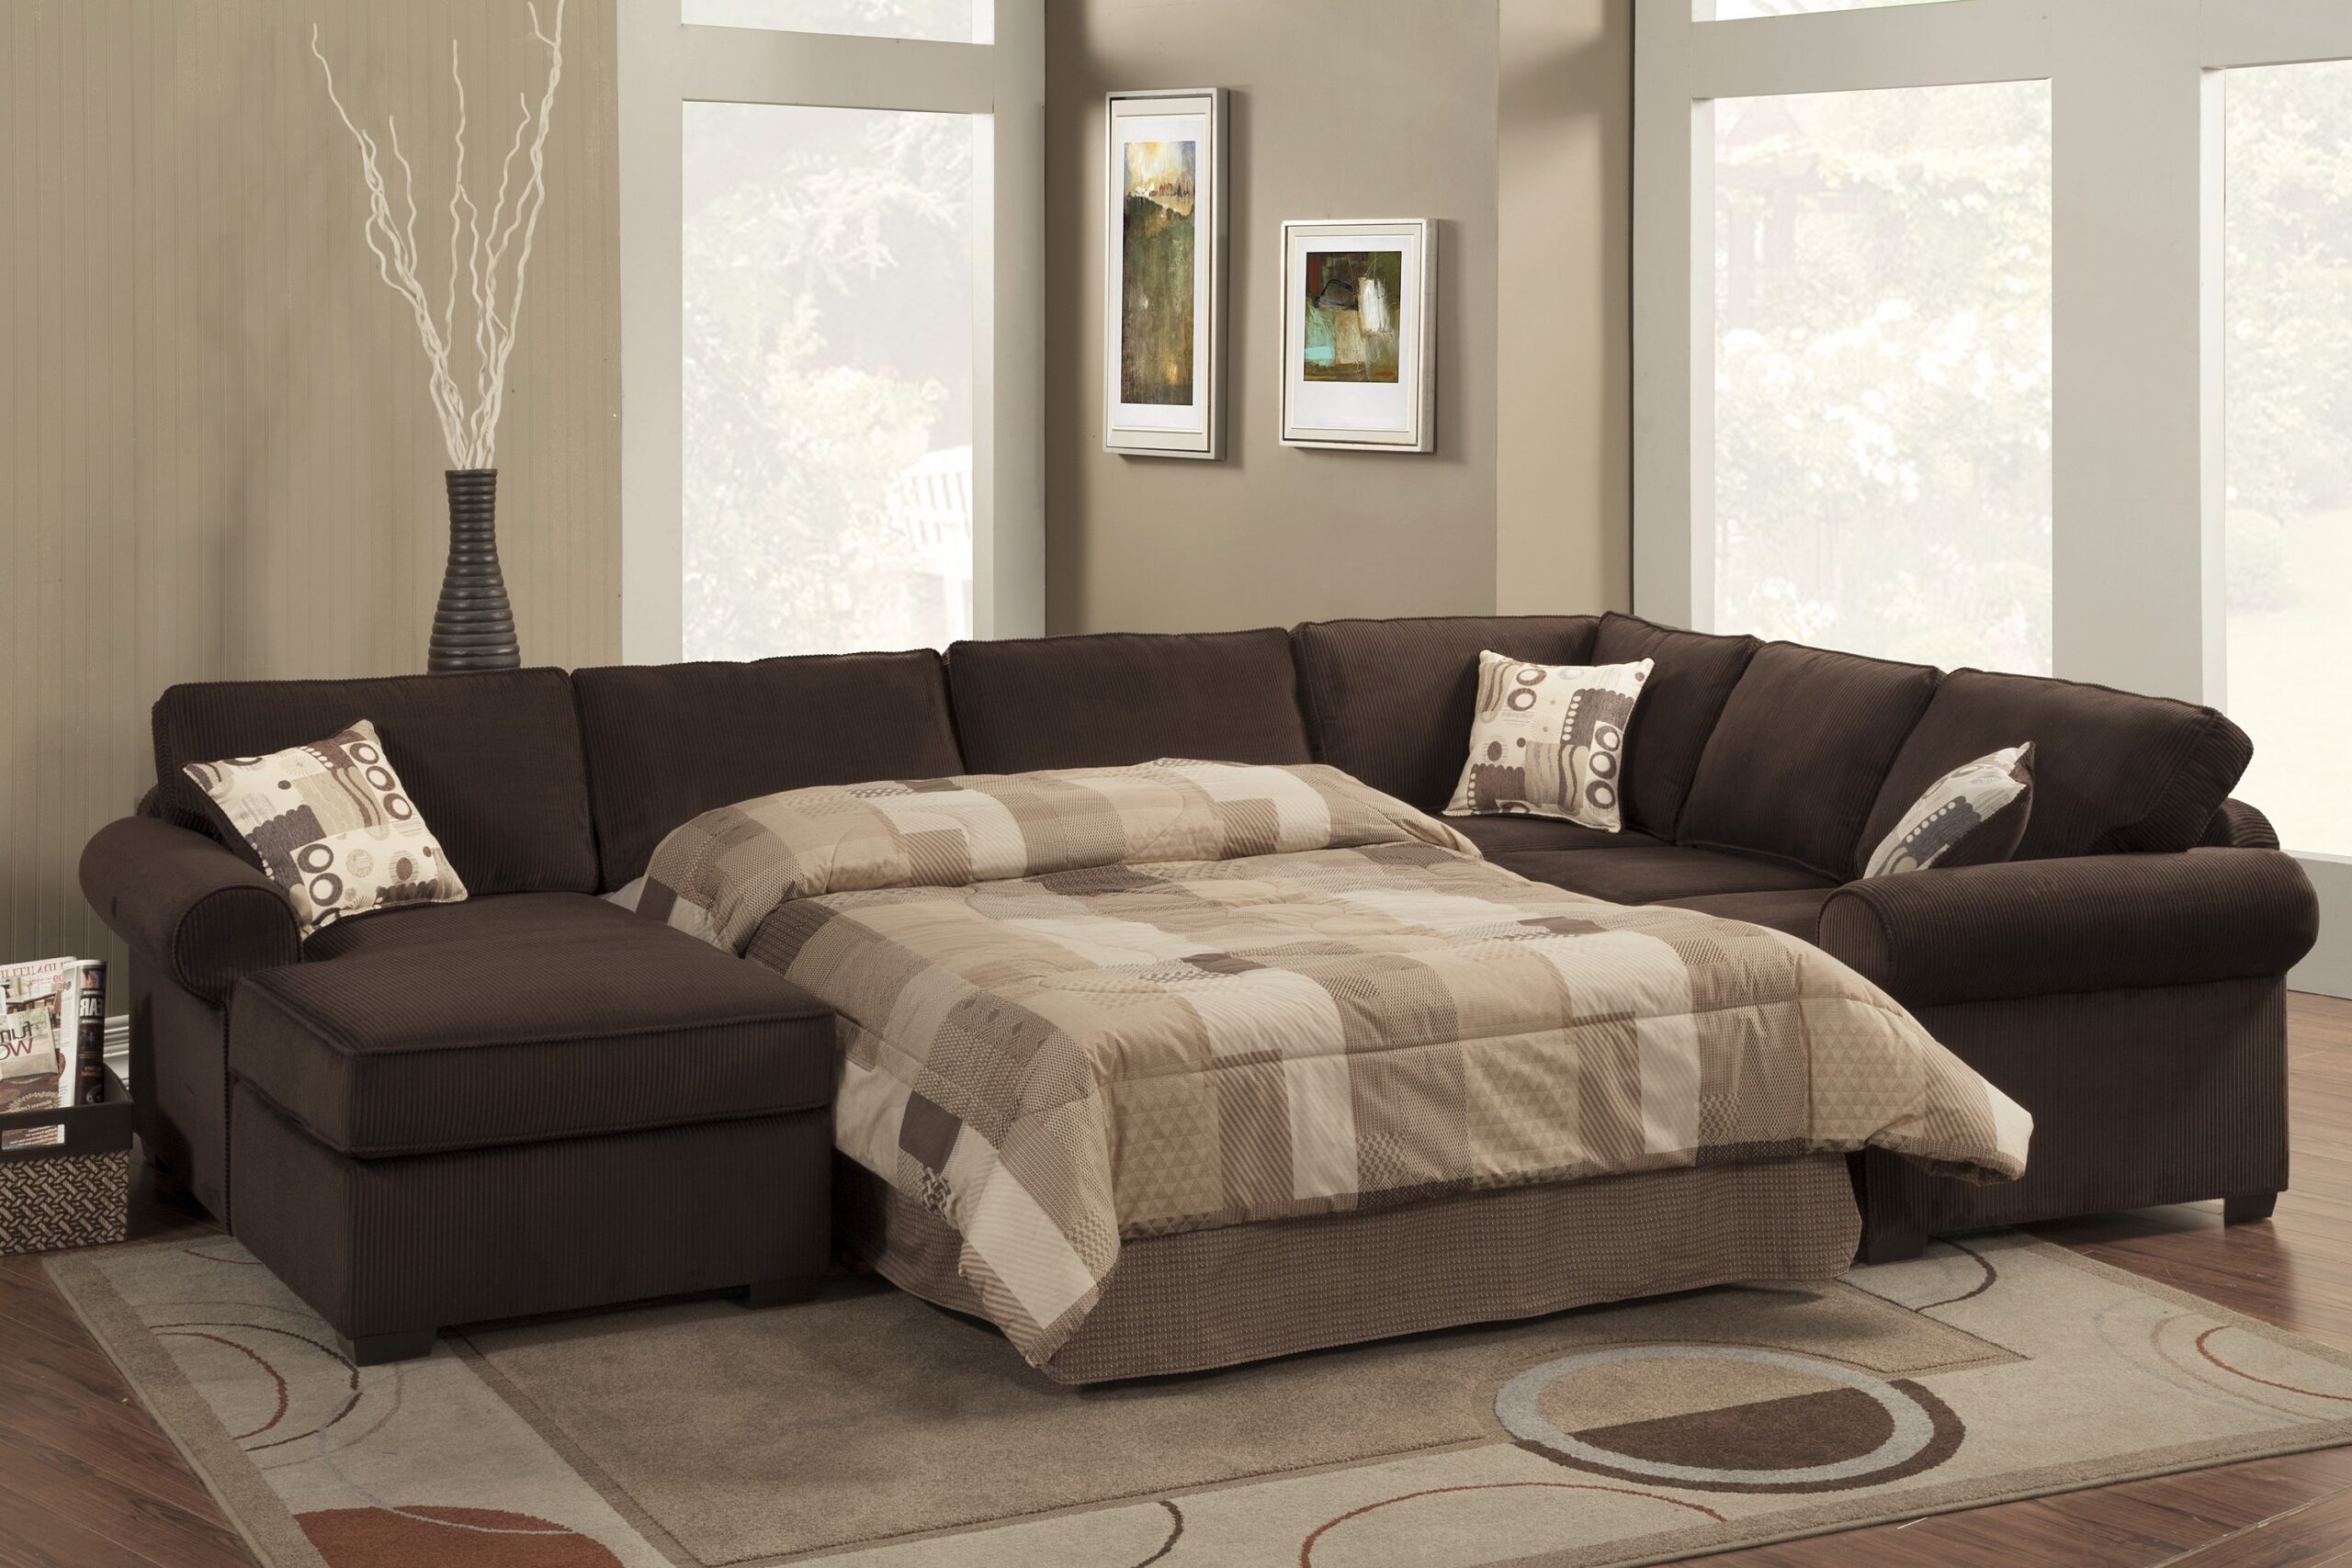 Cozy Sectional Sofas  decordip com